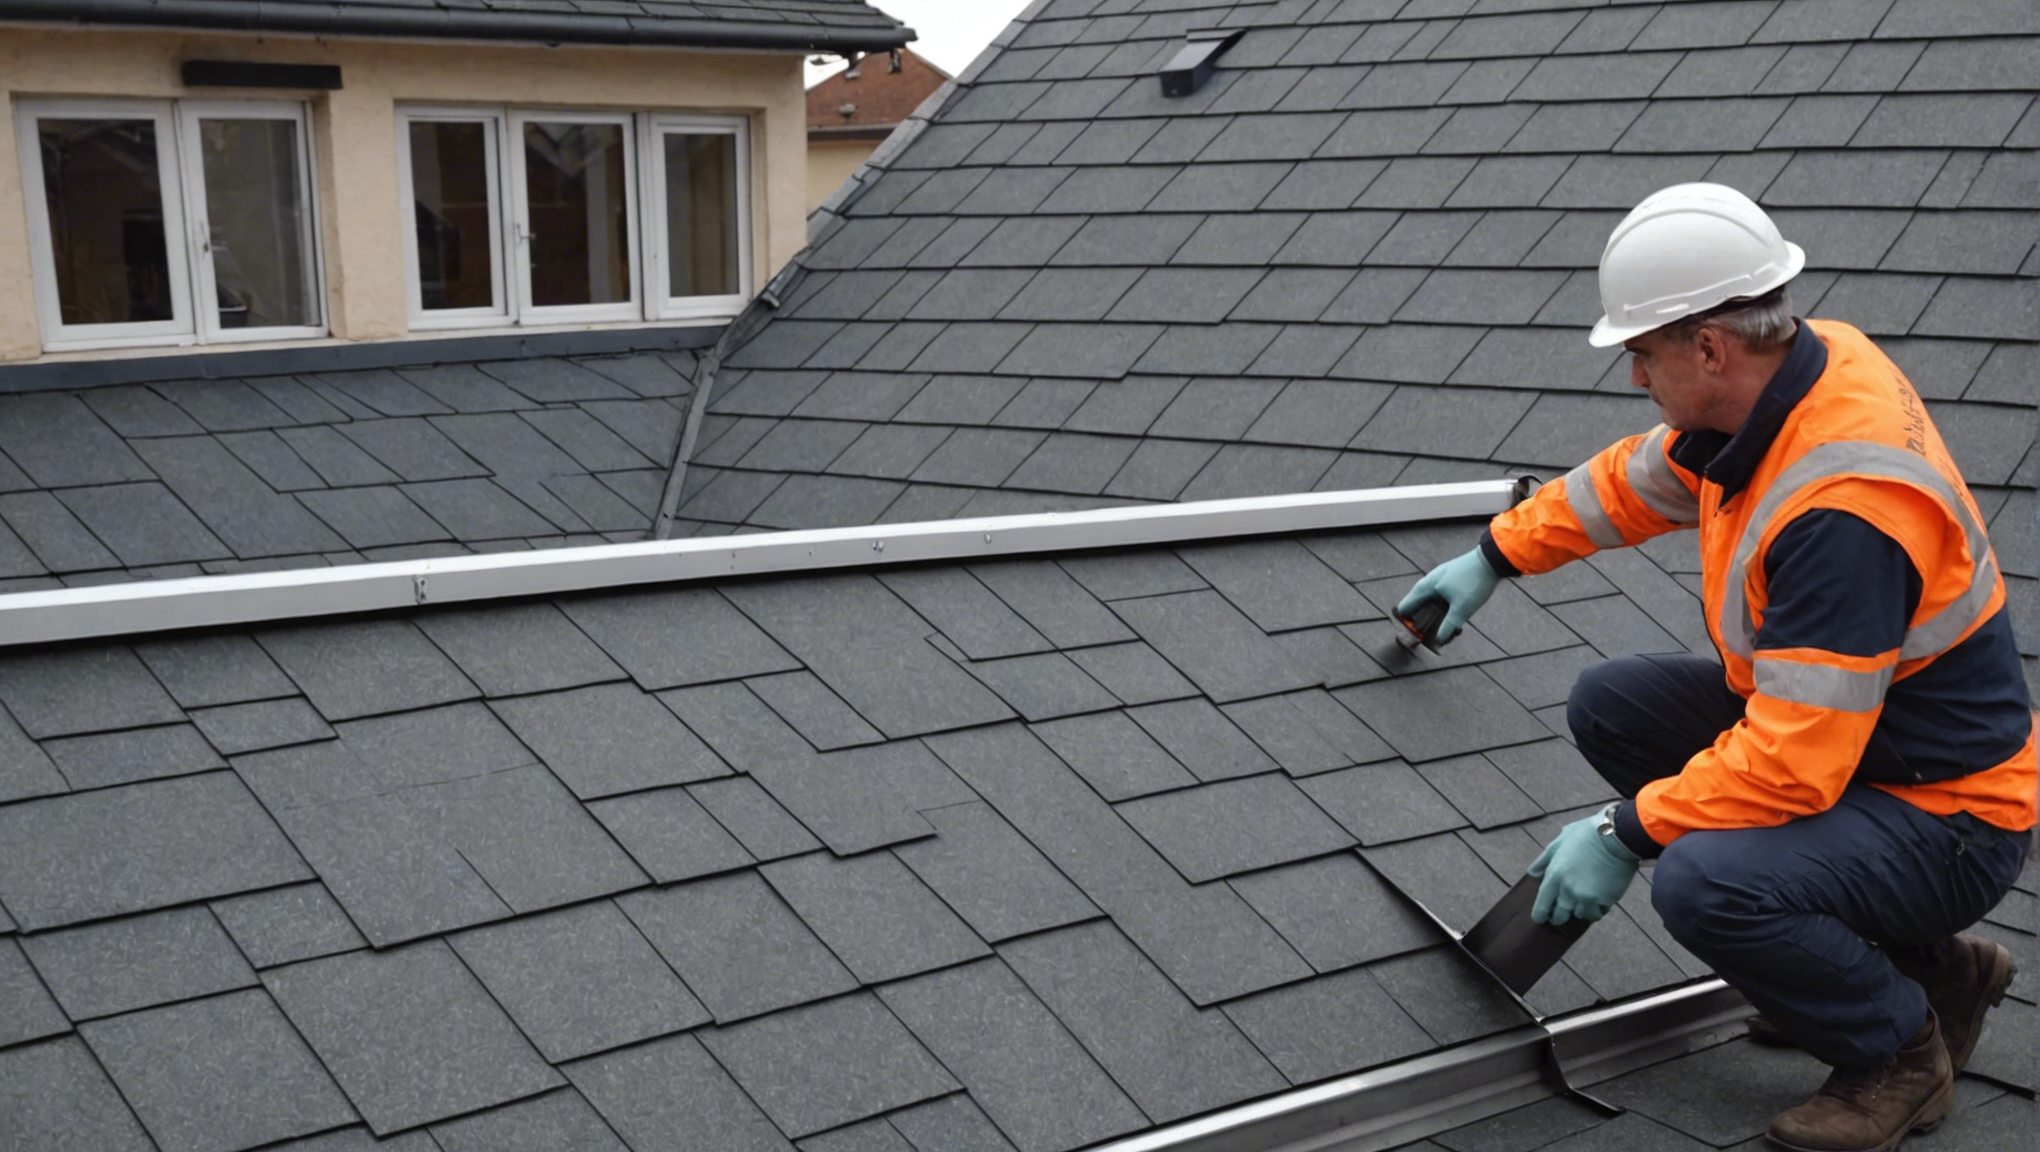 découvrez nos services d'inspection de toiture pour assurer la sécurité et la durabilité de votre toit. nos experts vous offrent un diagnostic détaillé pour une tranquillité d'esprit totale.